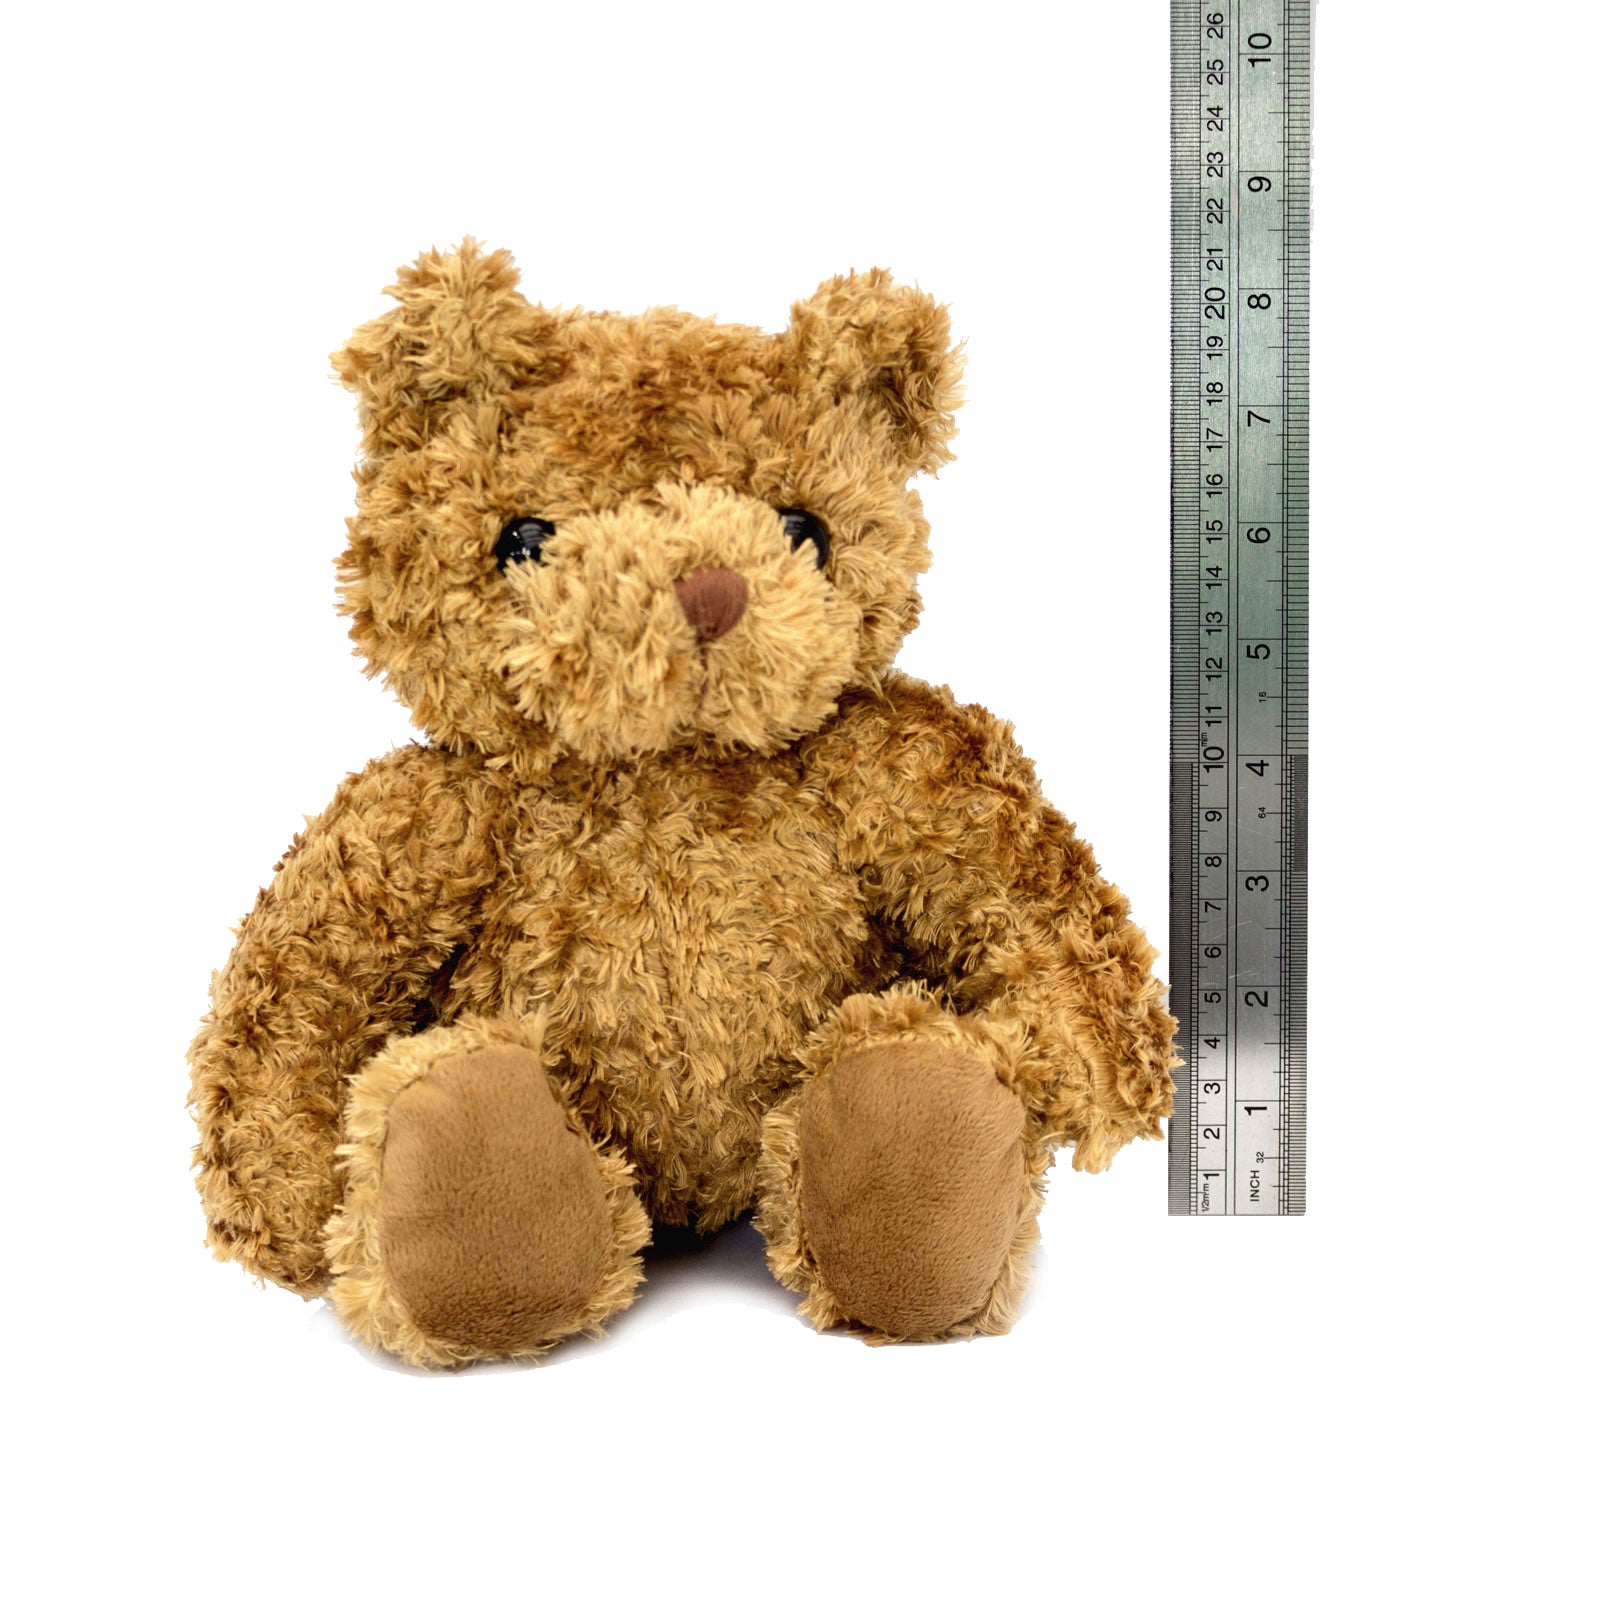 SUPER ABUELA - Teddy Bear - Cute Soft Cuddly - Gift Present